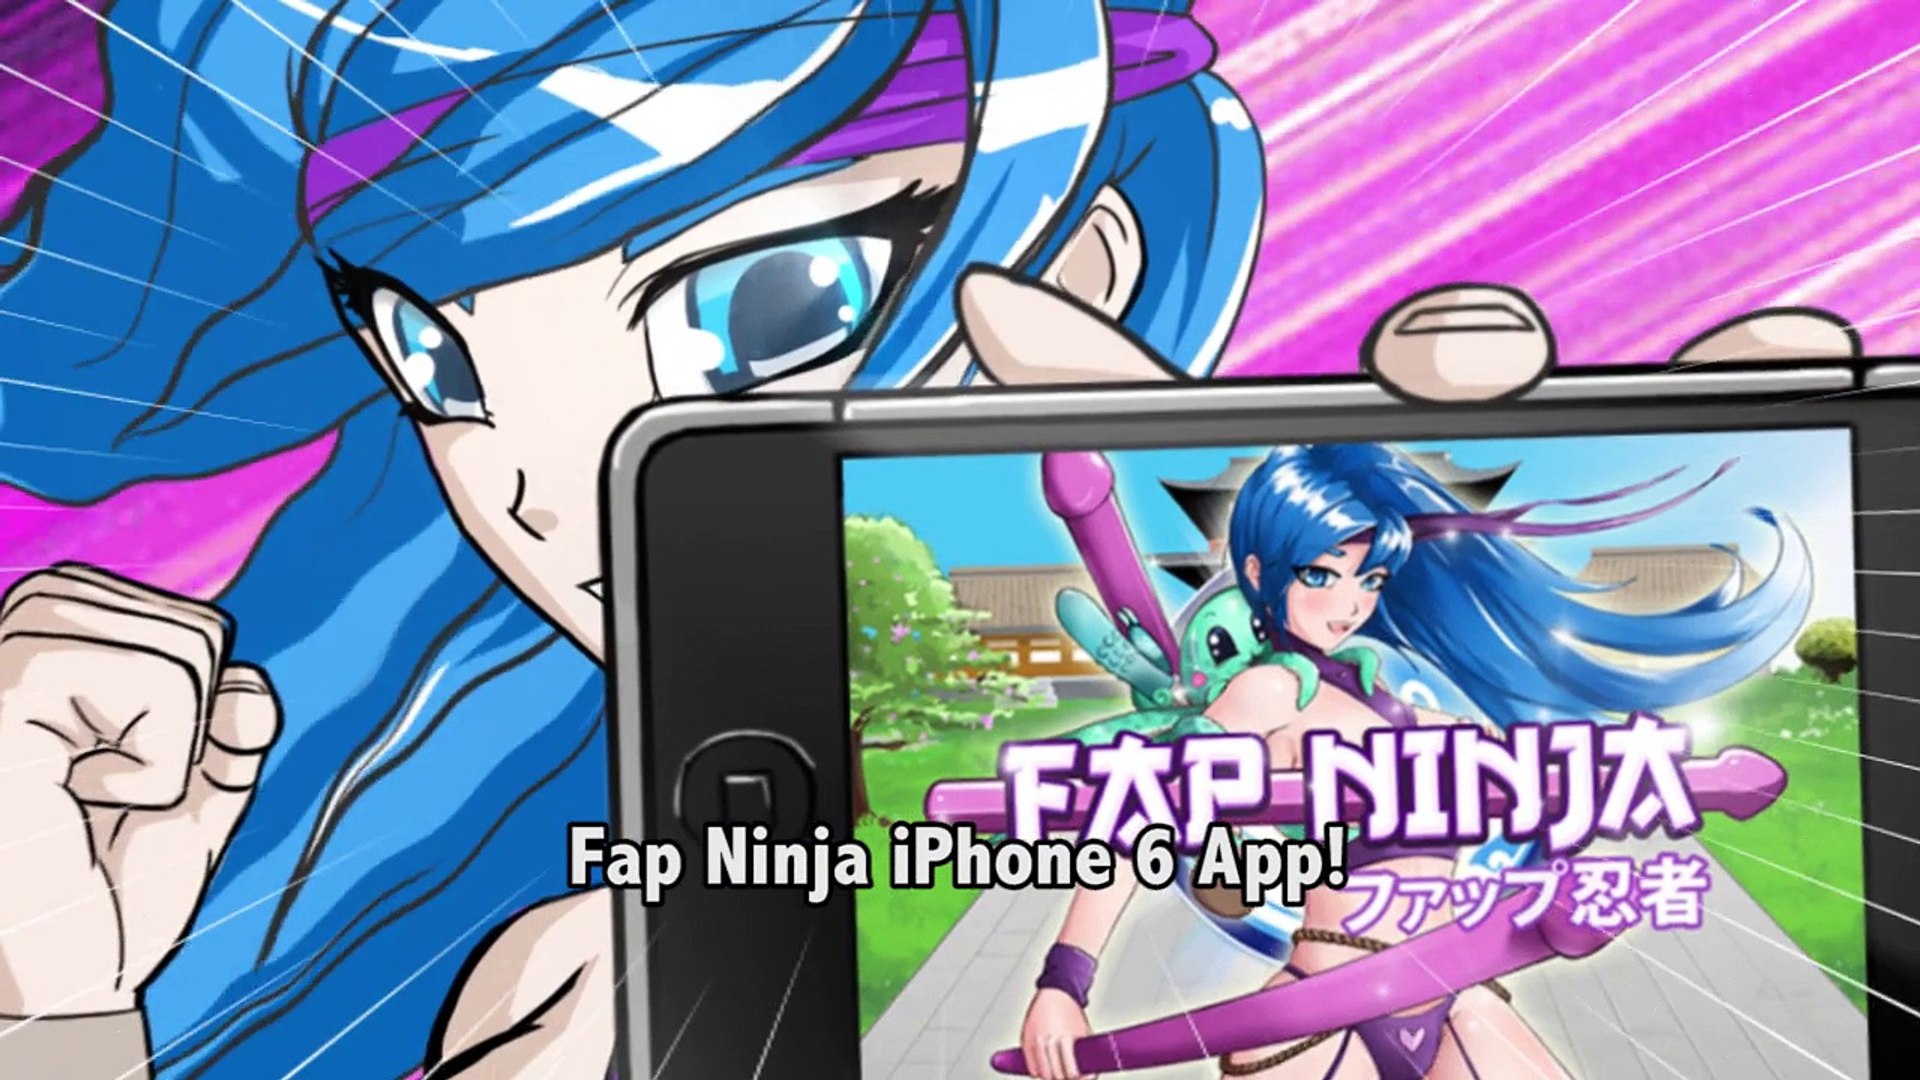 alt="Hentai App Iphone" title="Hentai App Iphone"back&q...